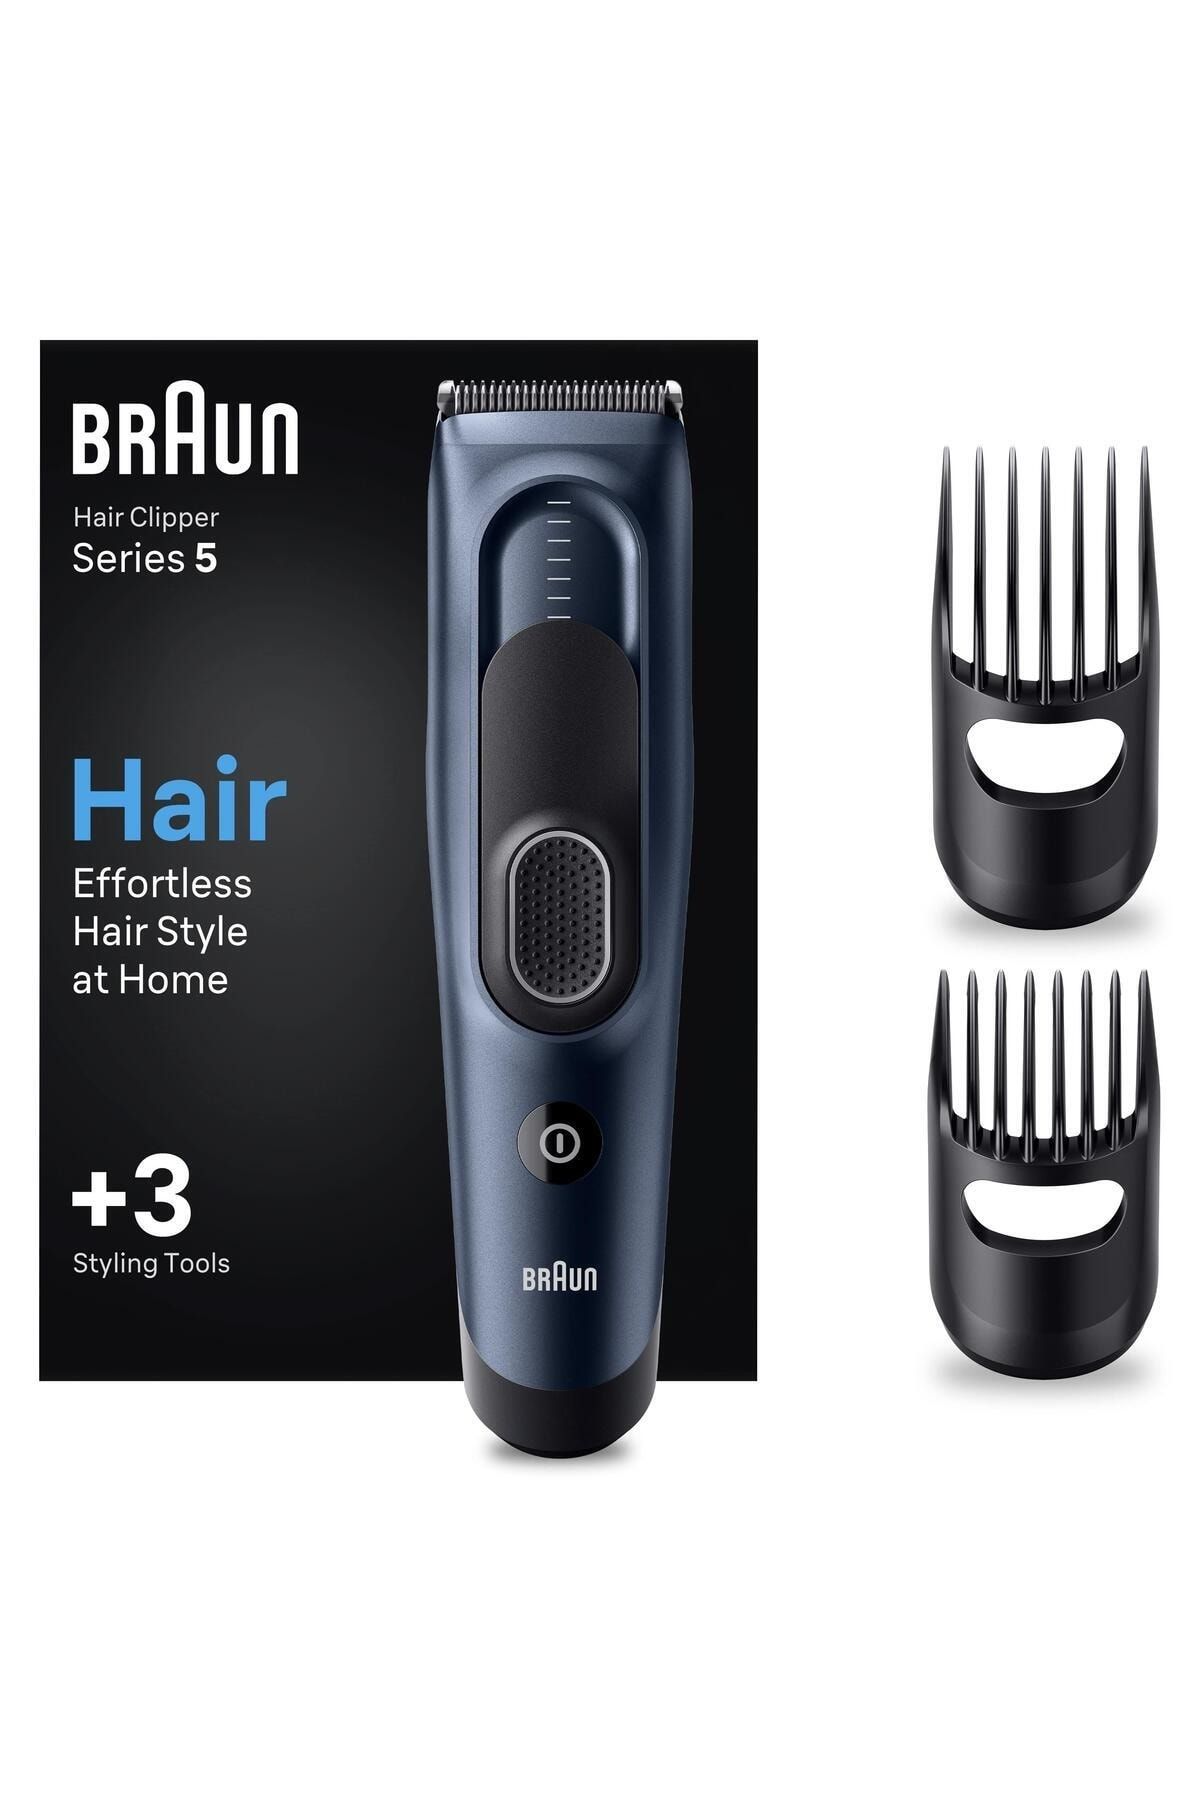 Braun Series 5 HC5350, Erkekler İçin 17 Uzunluk Ayarına Sahip Saç Kesme Makinesi